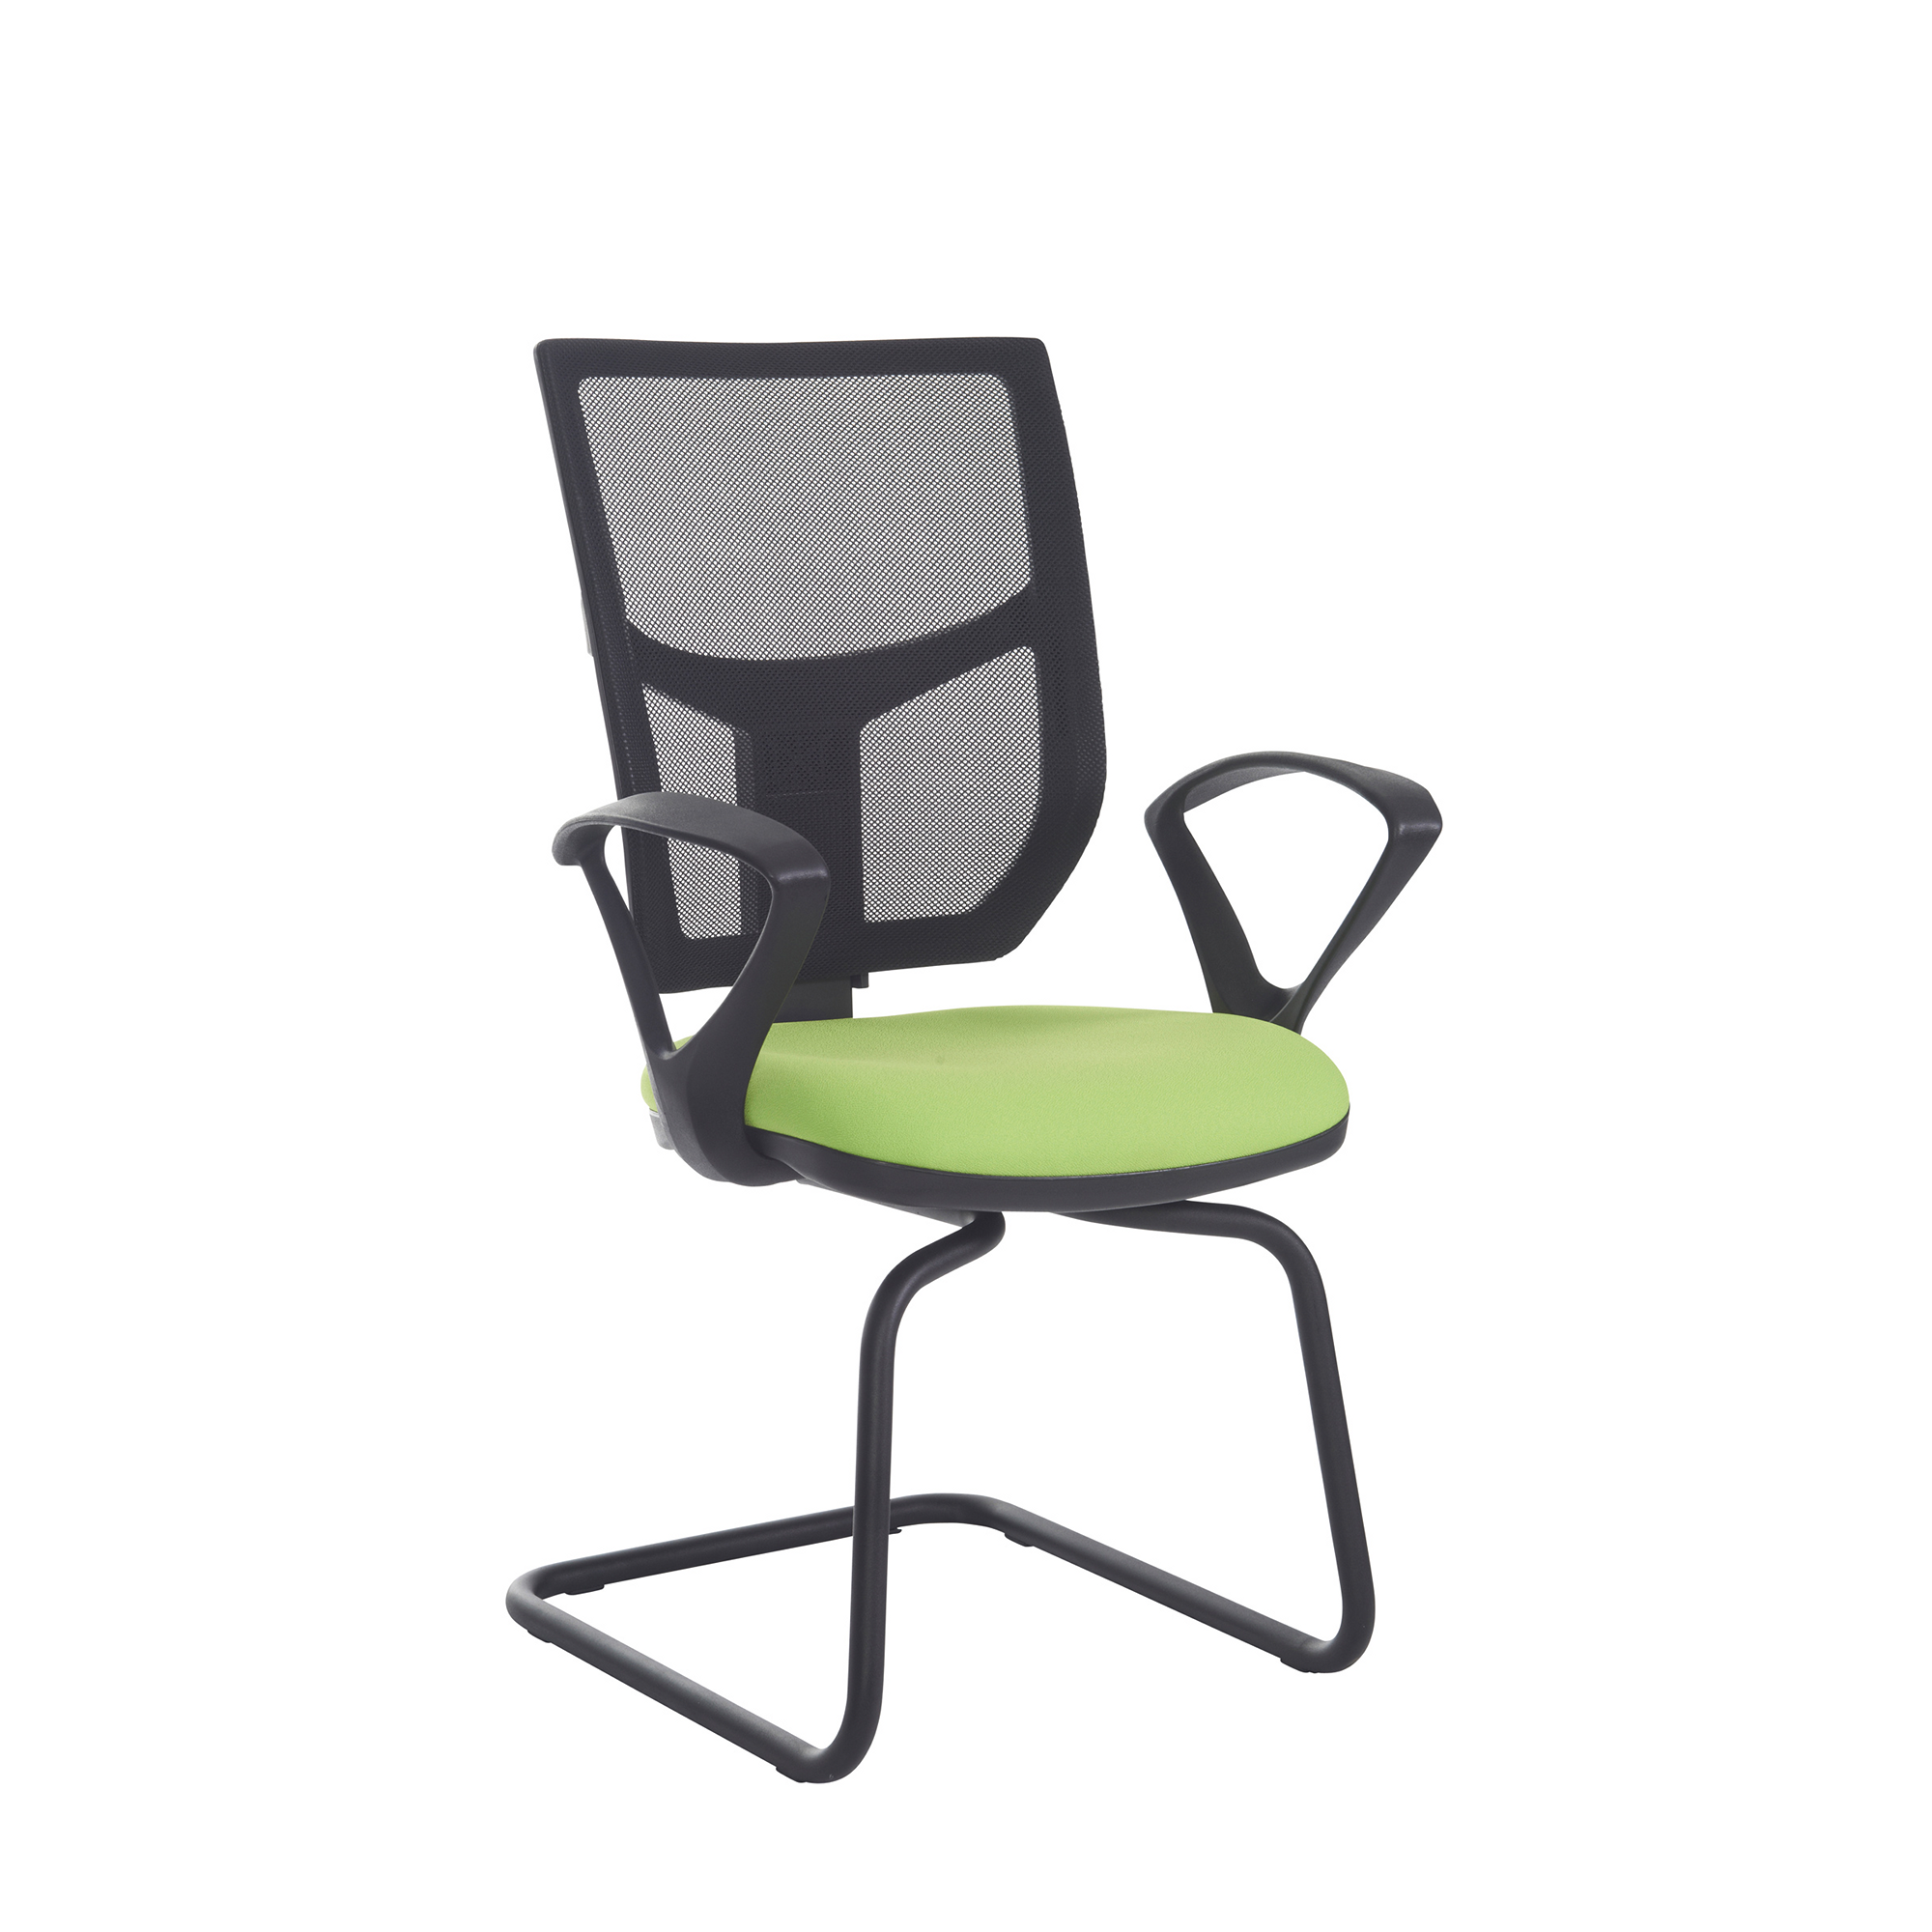 Altino Arm Chair Green